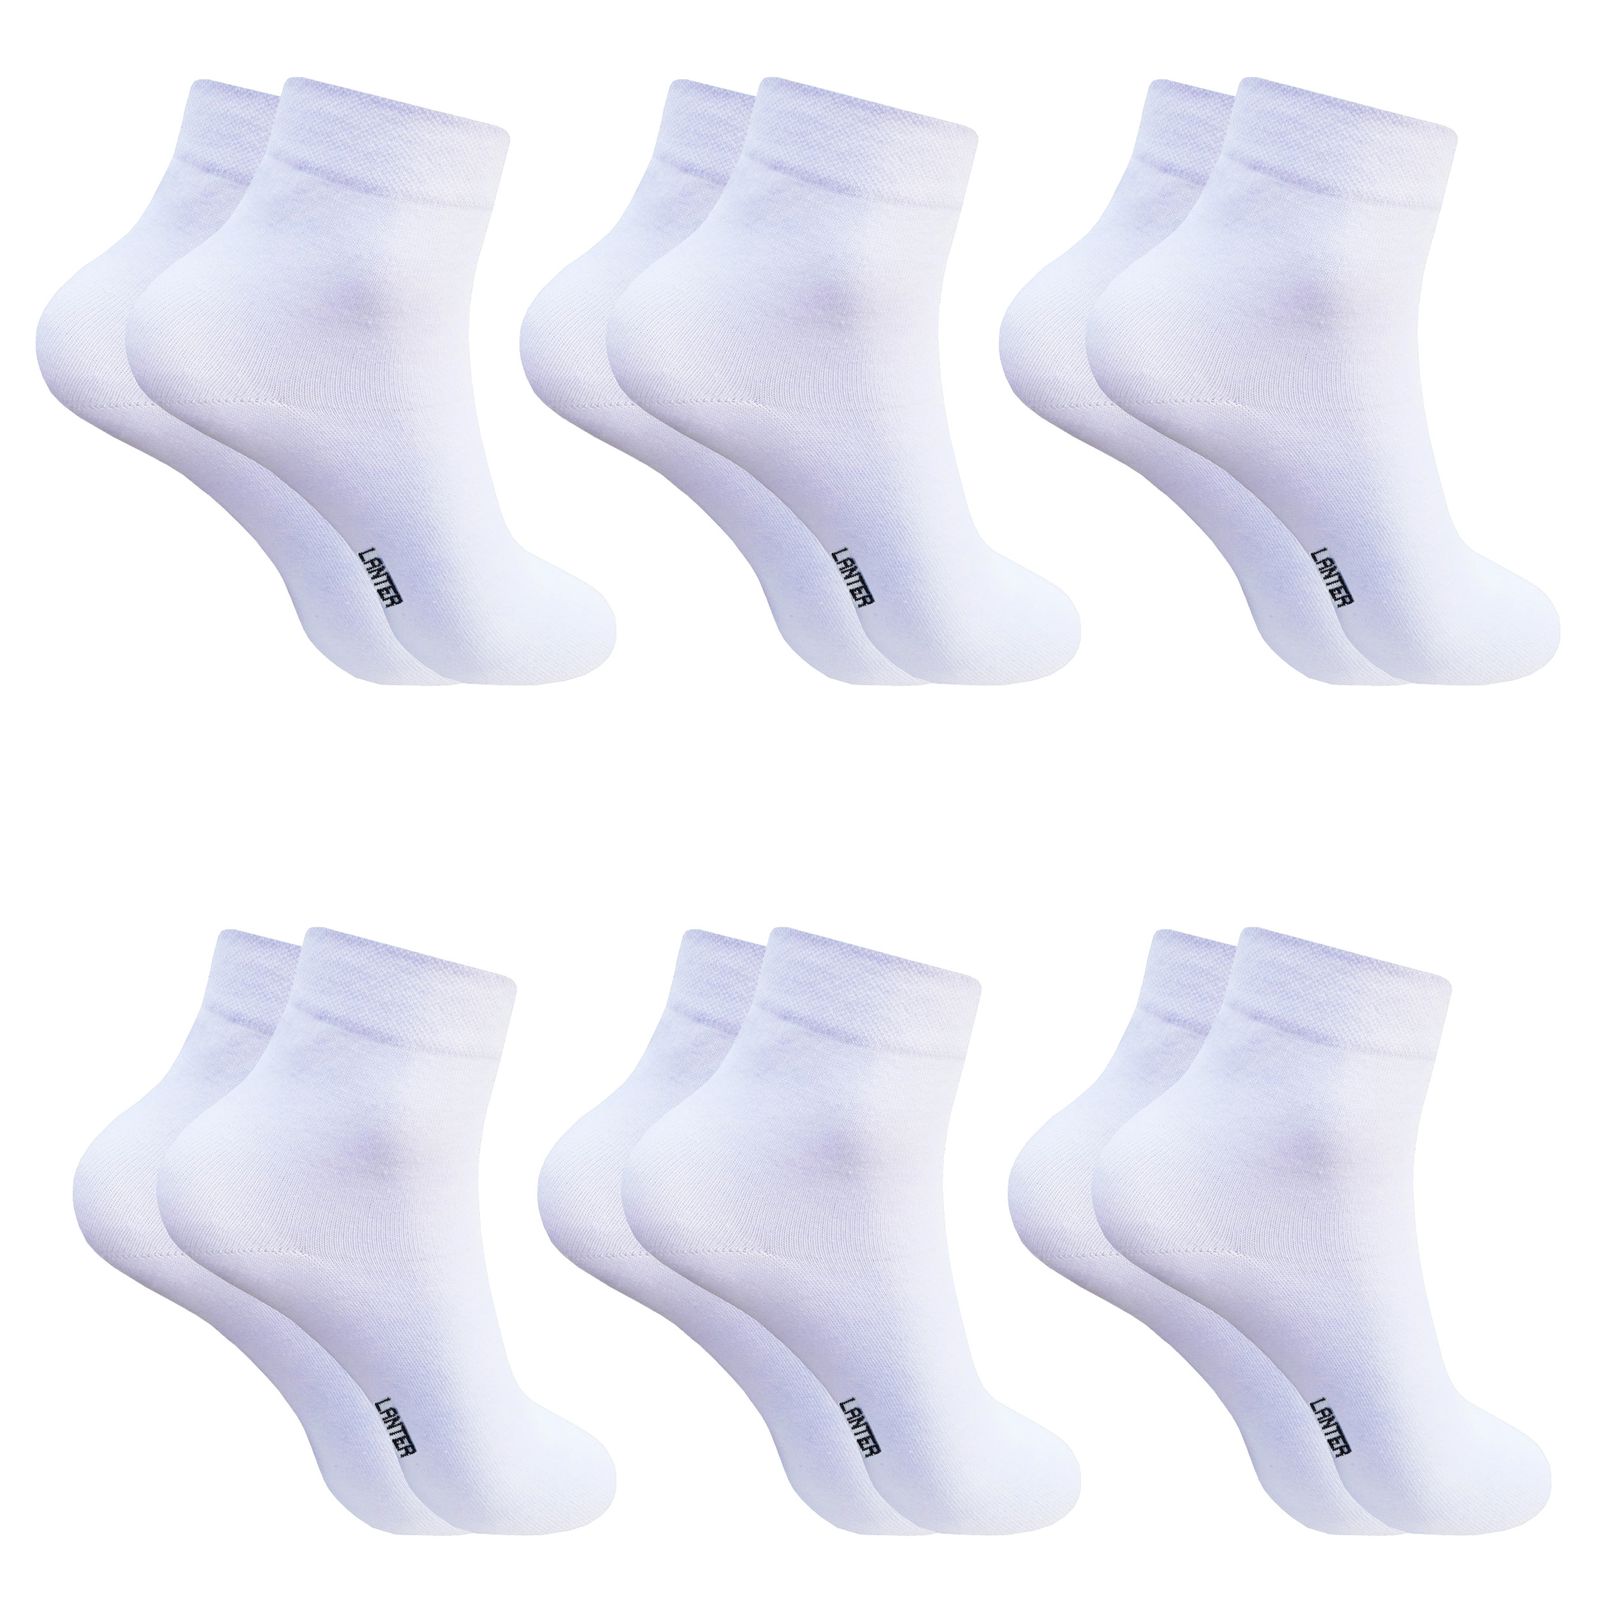 جوراب ساق کوتاه مردانه لنتر مدل ساده کد Ruellia رنگ سفید مجموعه 6 عددی -  - 1